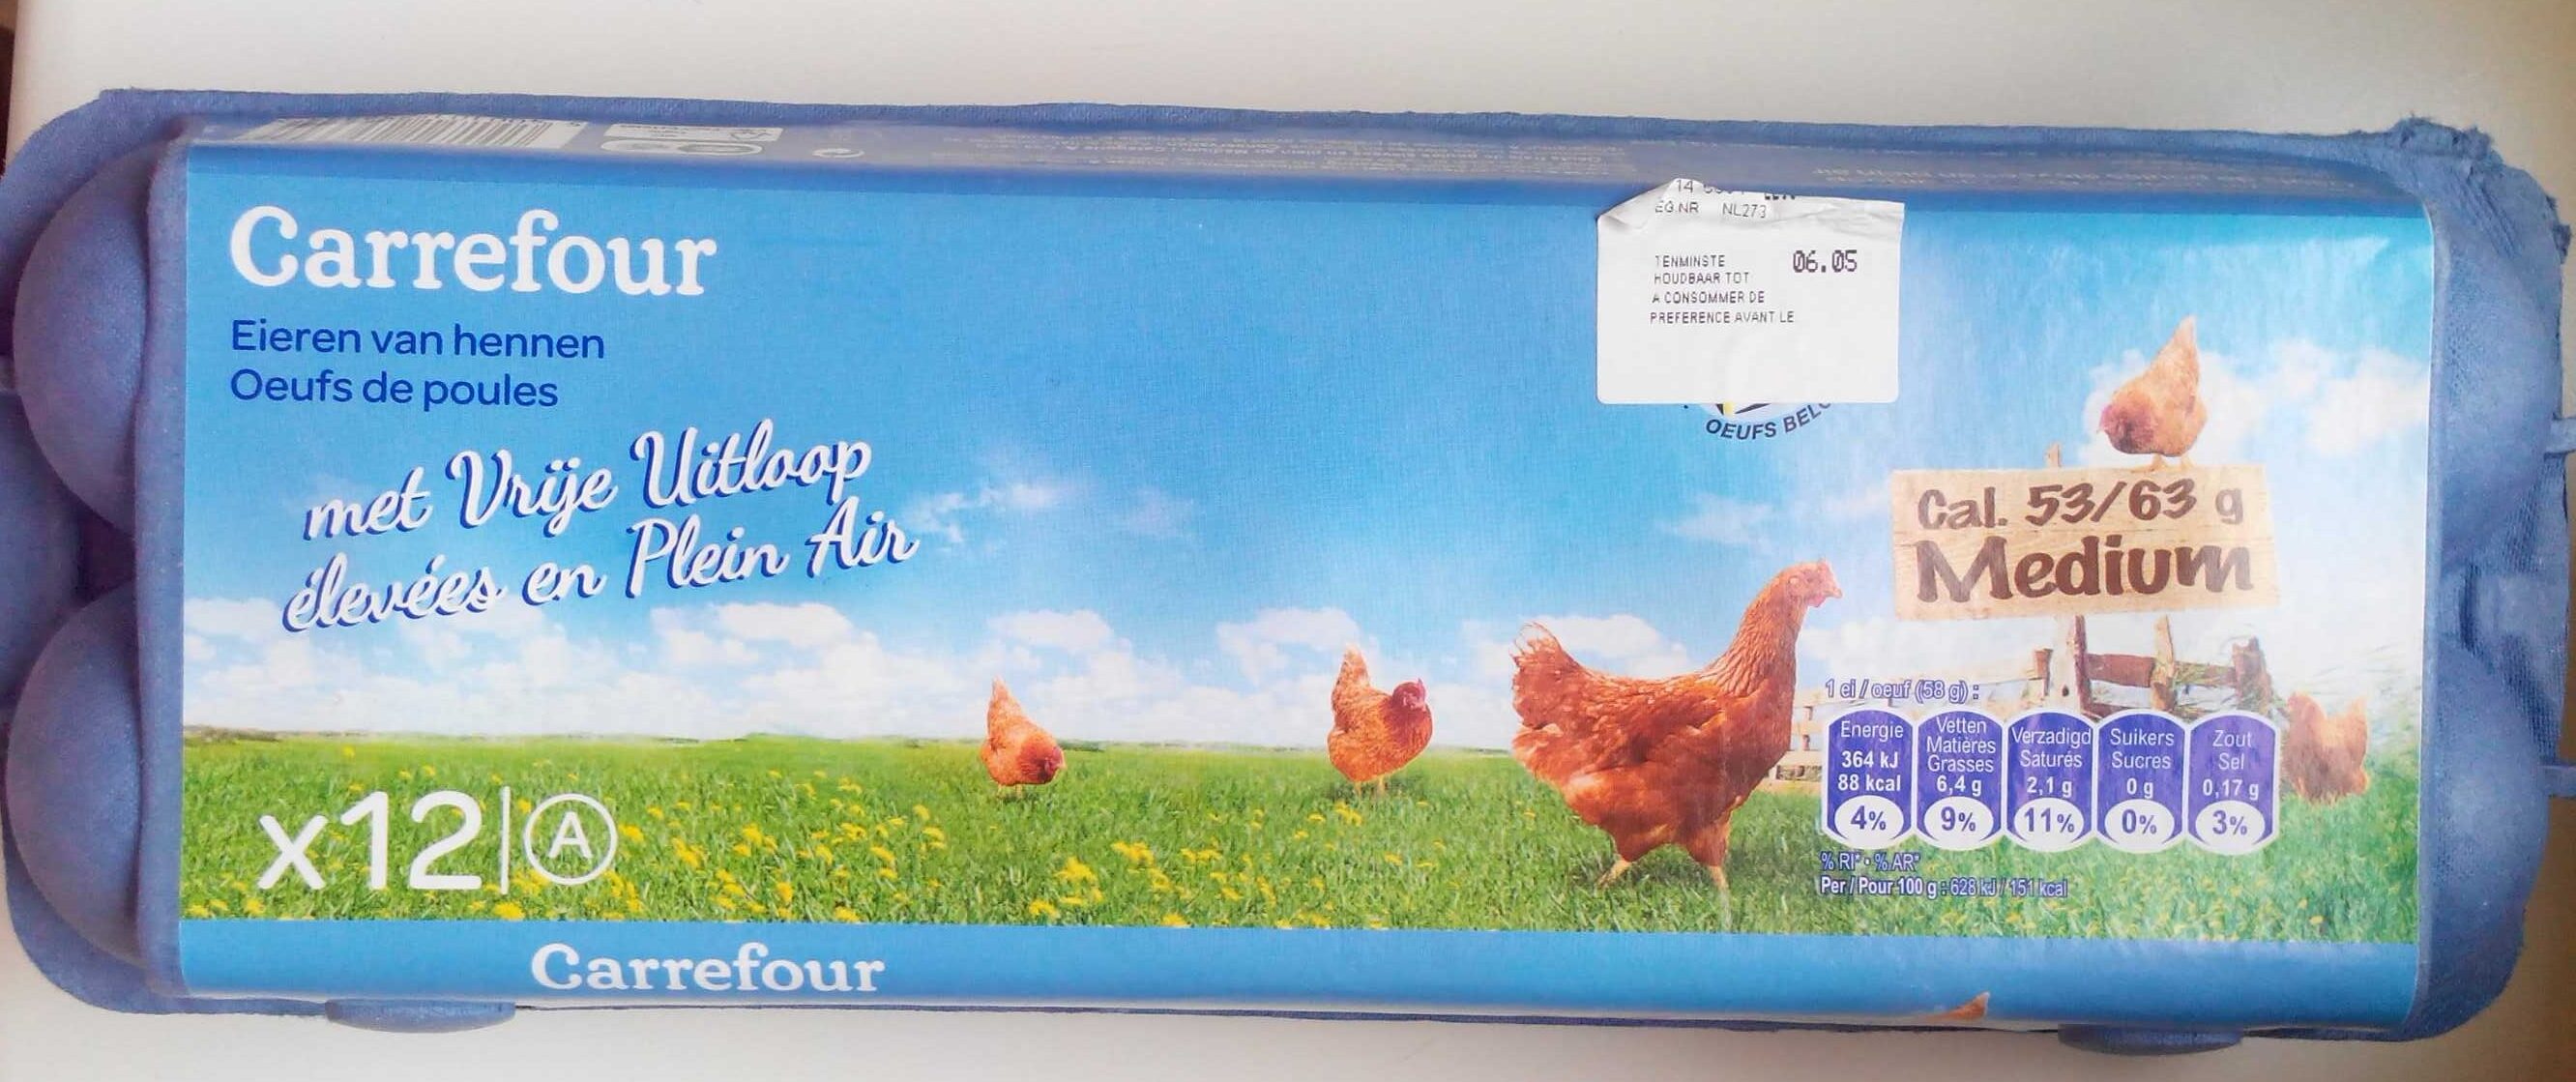 Œufs de poules élevées en plein air Medium - Product - fr